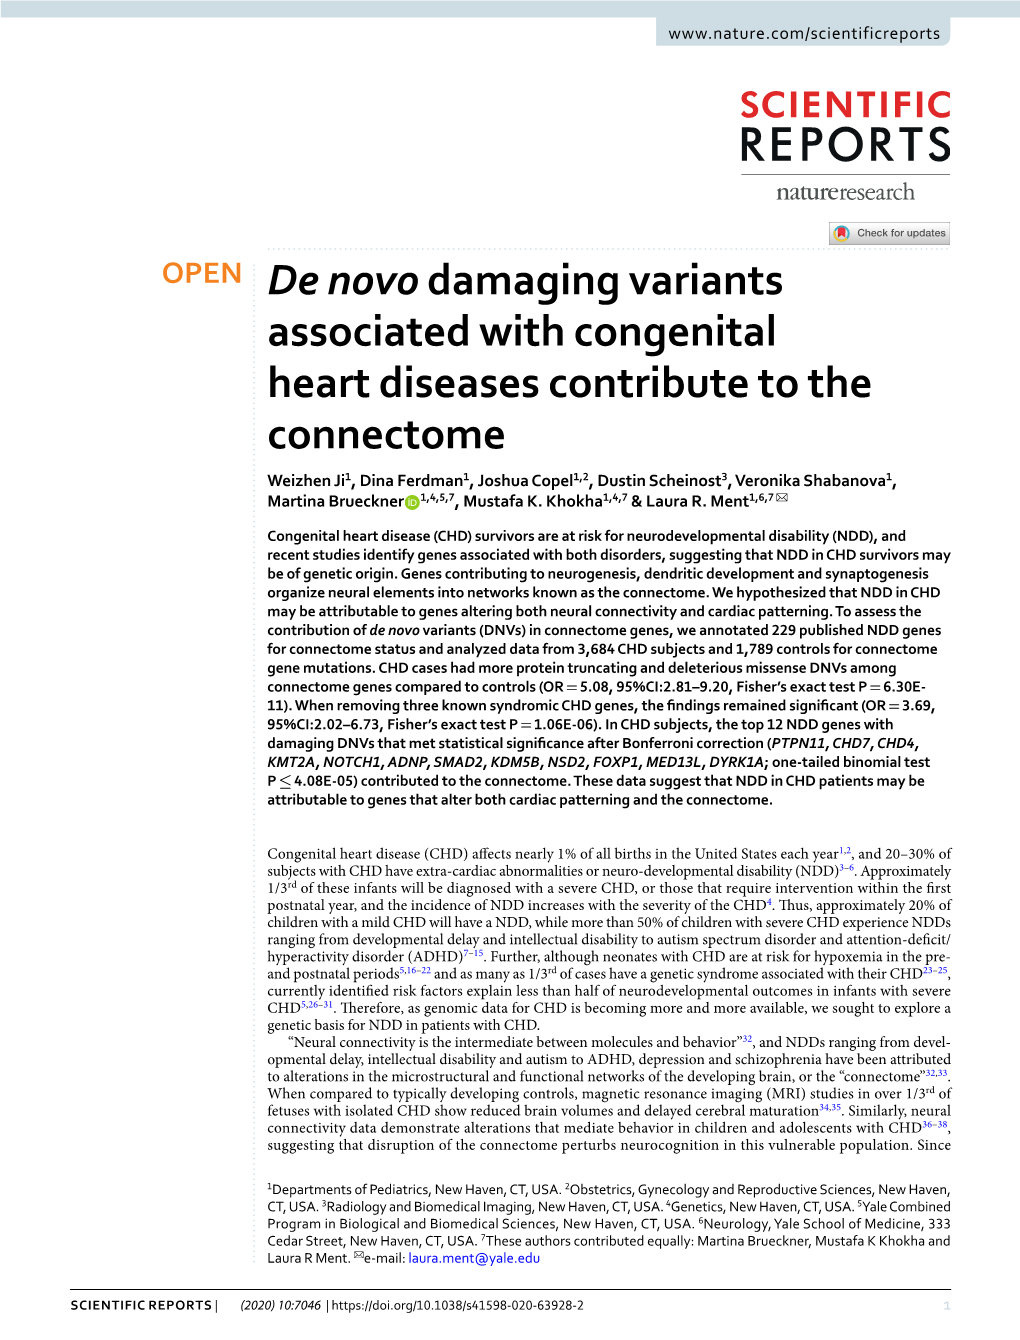 De Novodamaging Variants Associated with Congenital Heart Diseases